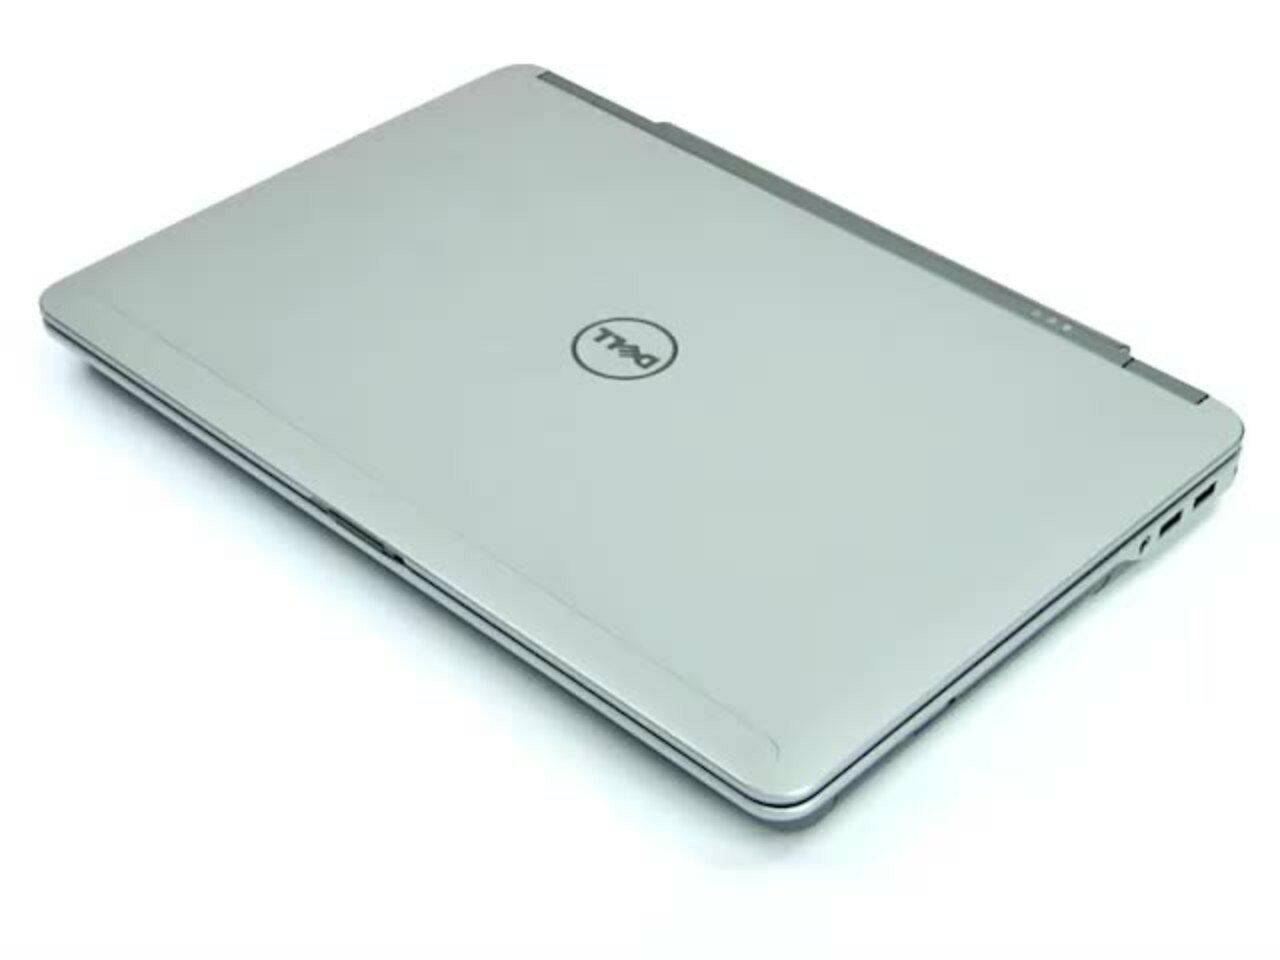 Dell Latitude E7440 14" Laptop PC Core i5-4310U 256GB SSD 8GB RAM Win 10